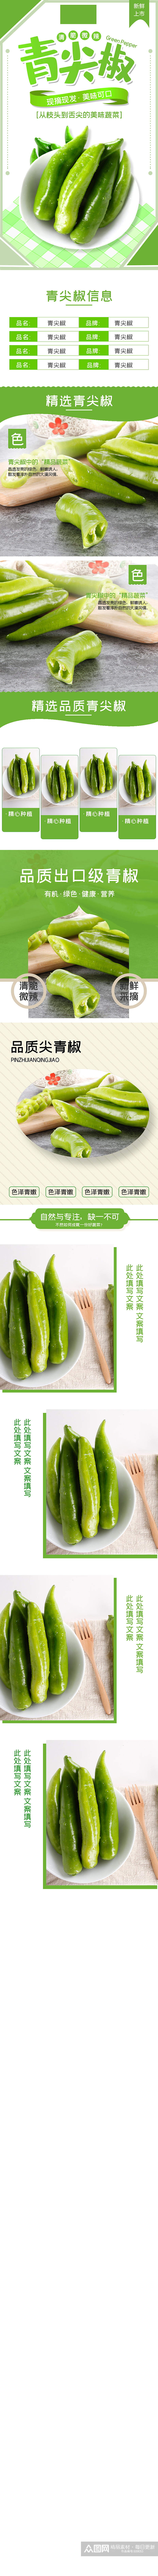 水果蔬菜青尖椒辣椒西瓜芒果详情页素材